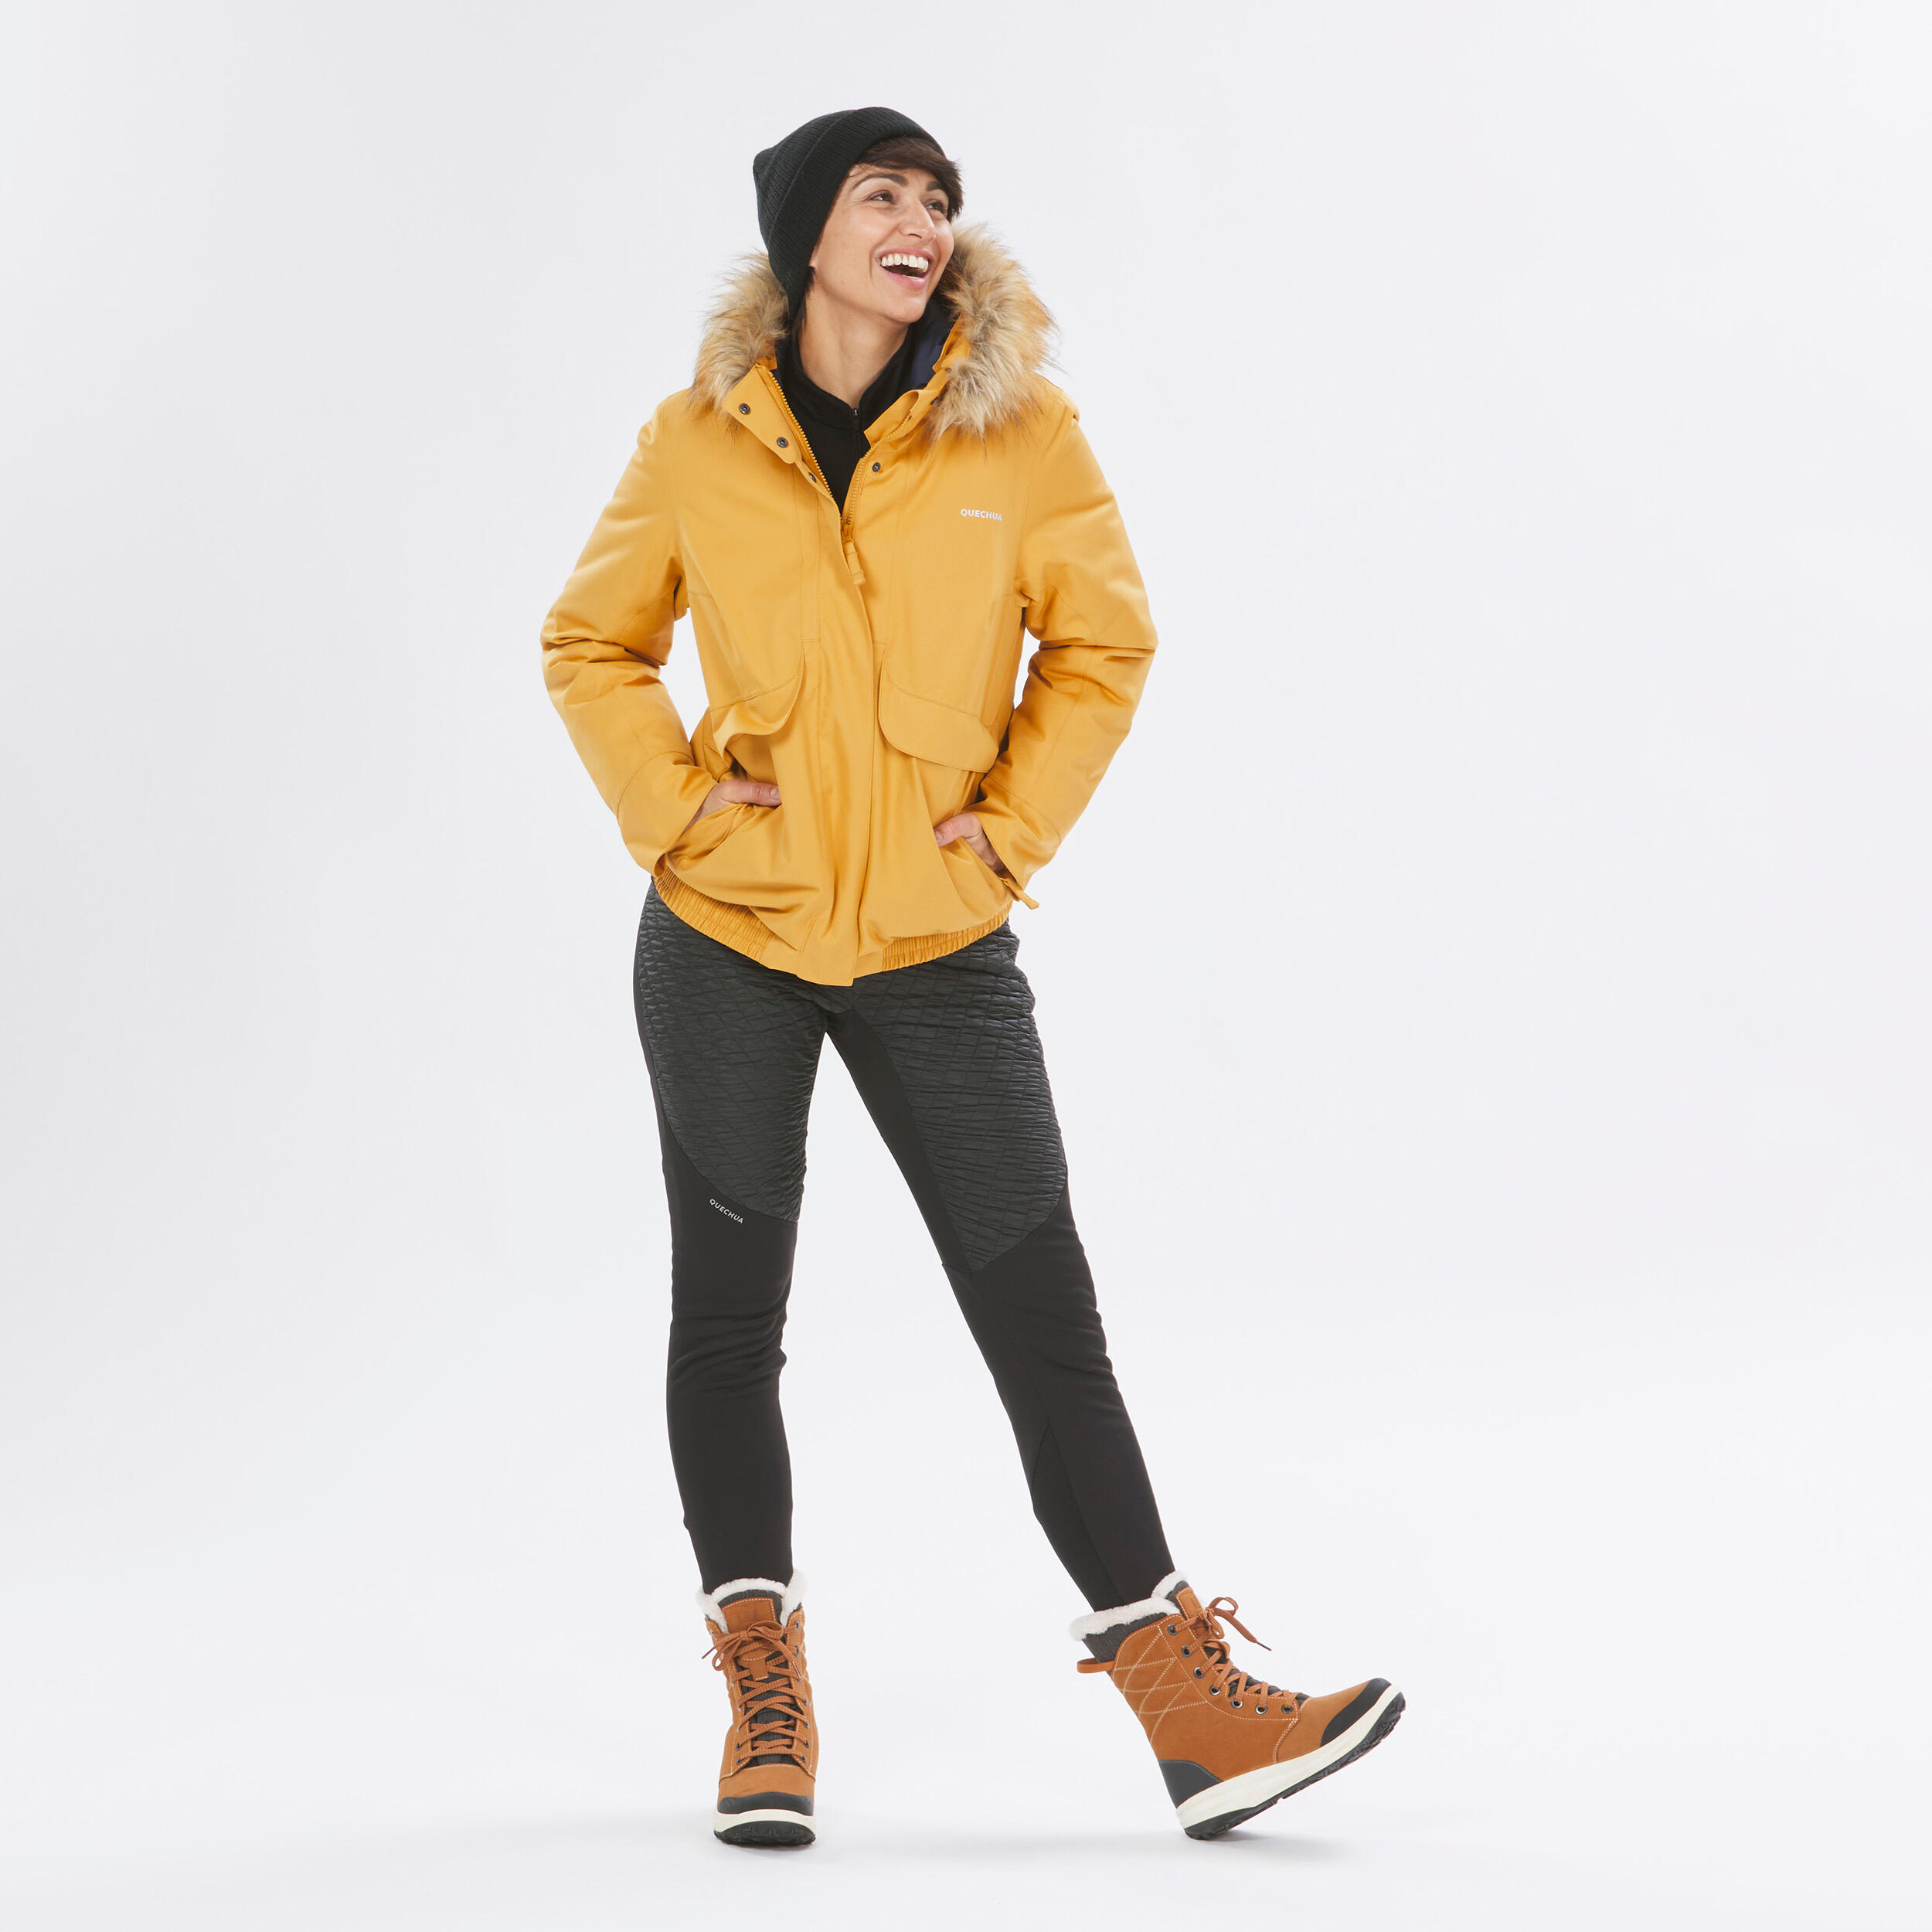 Women’s waterproof winter hiking jacket - SH500 -8°C 13/14